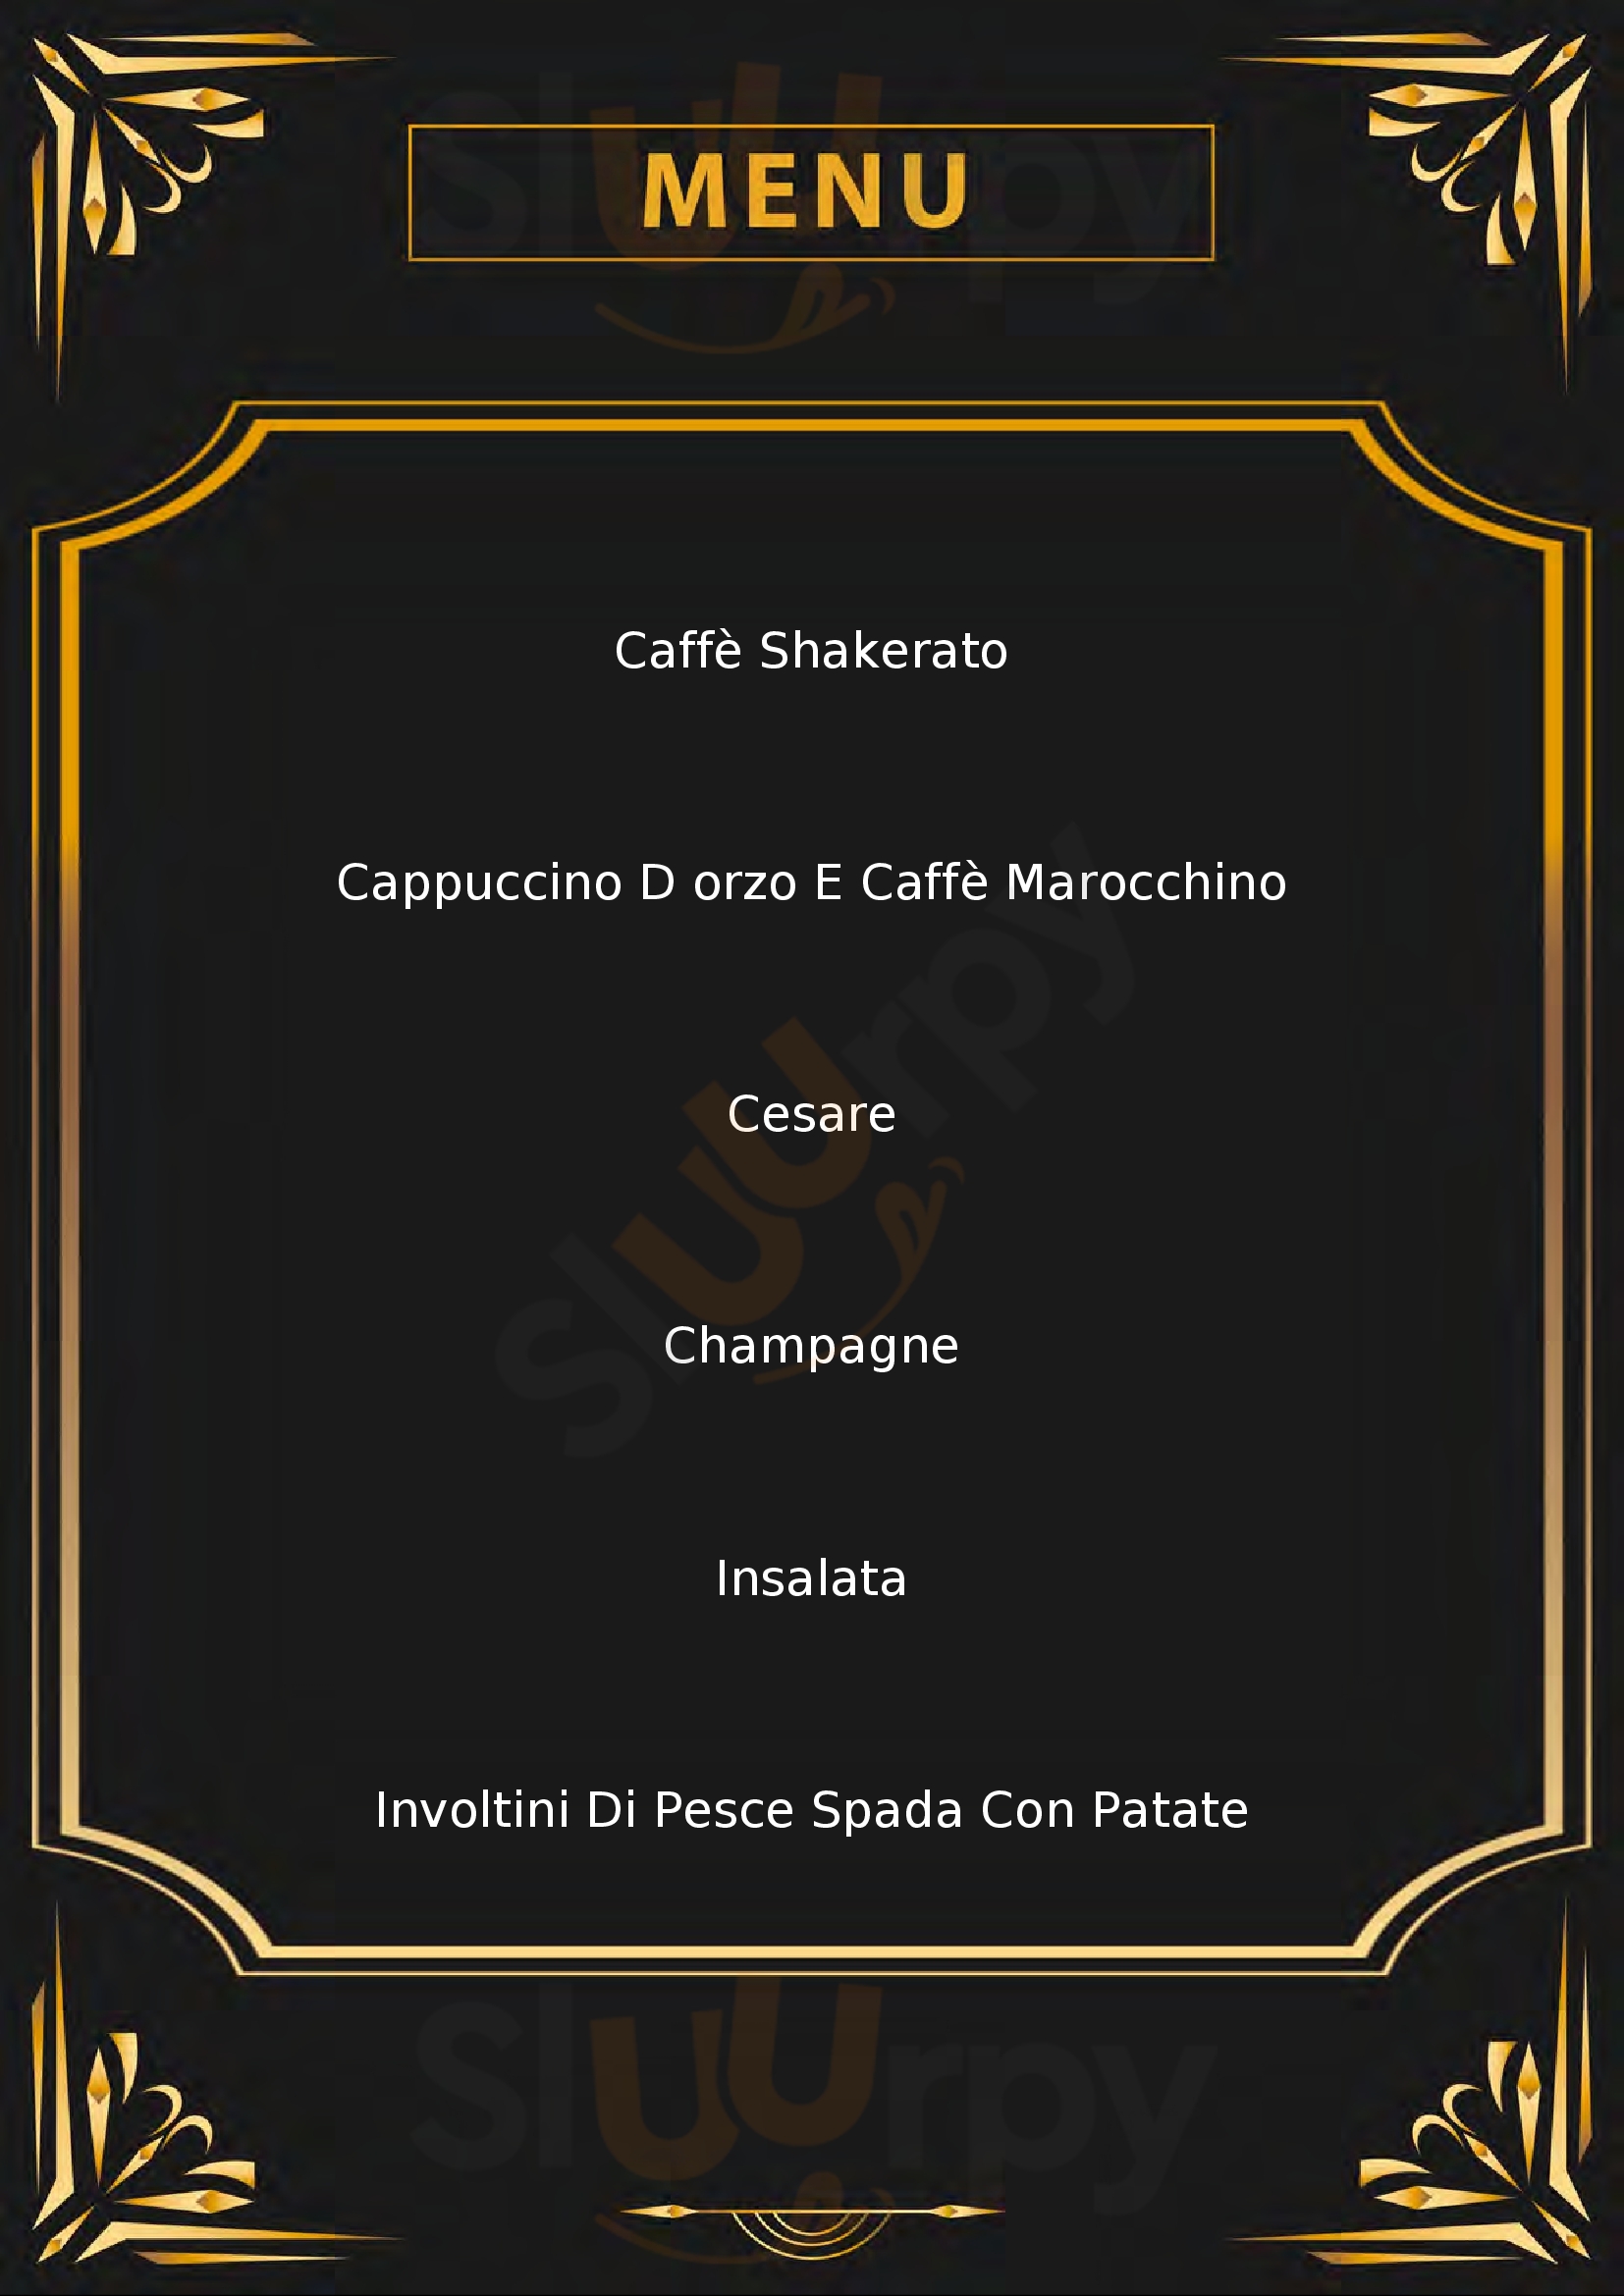 Spritz Cafè Varese menù 1 pagina